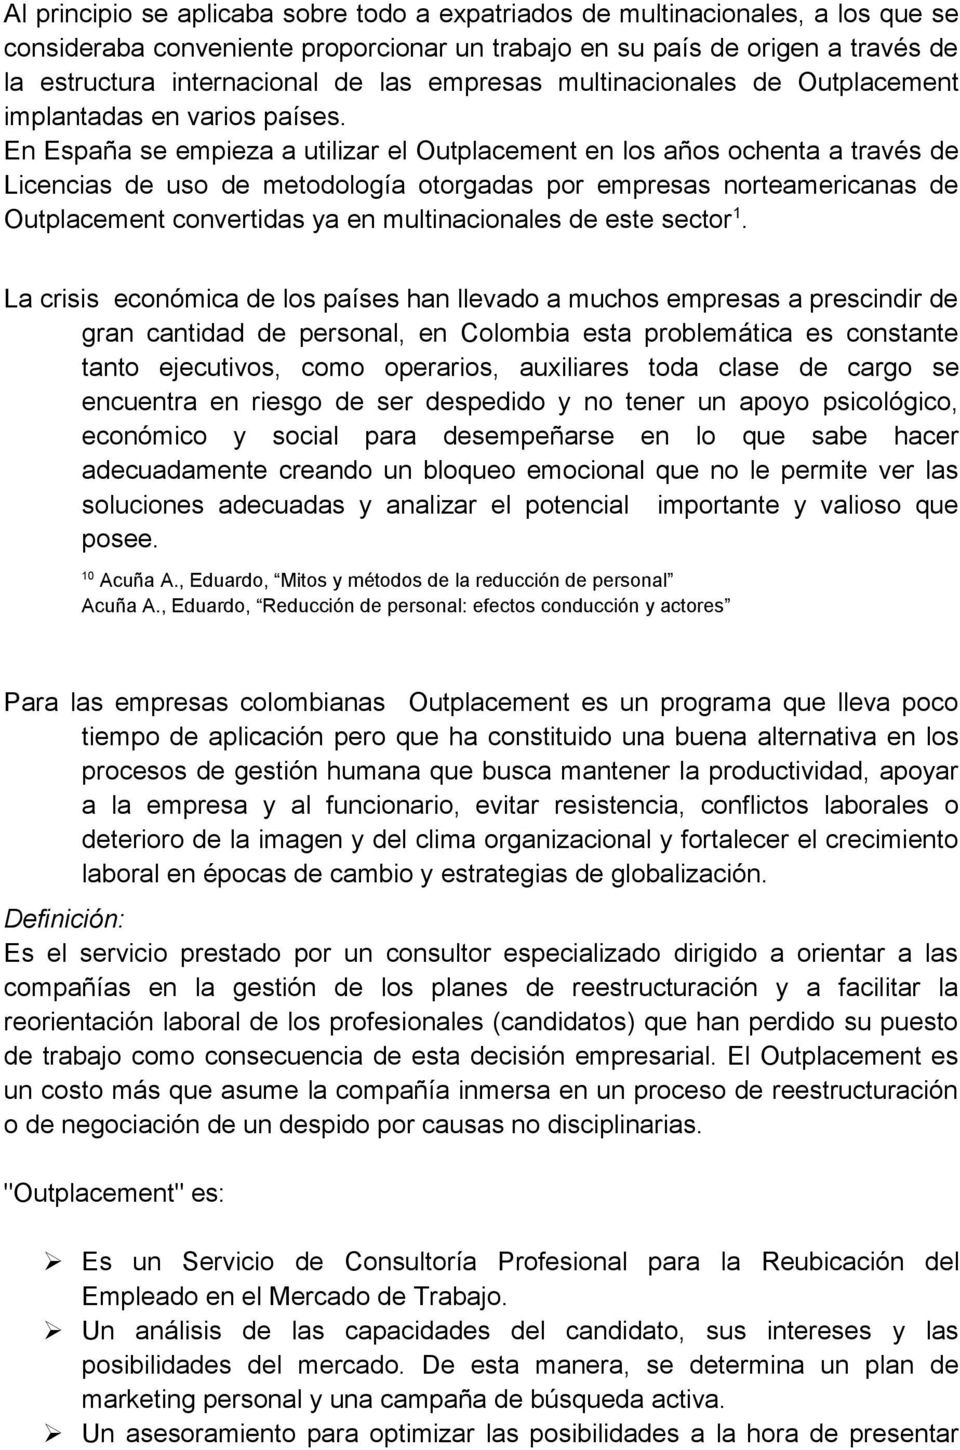 En España se empieza a utilizar el Outplacement en los años ochenta a través de Licencias de uso de metodología otorgadas por empresas norteamericanas de Outplacement convertidas ya en